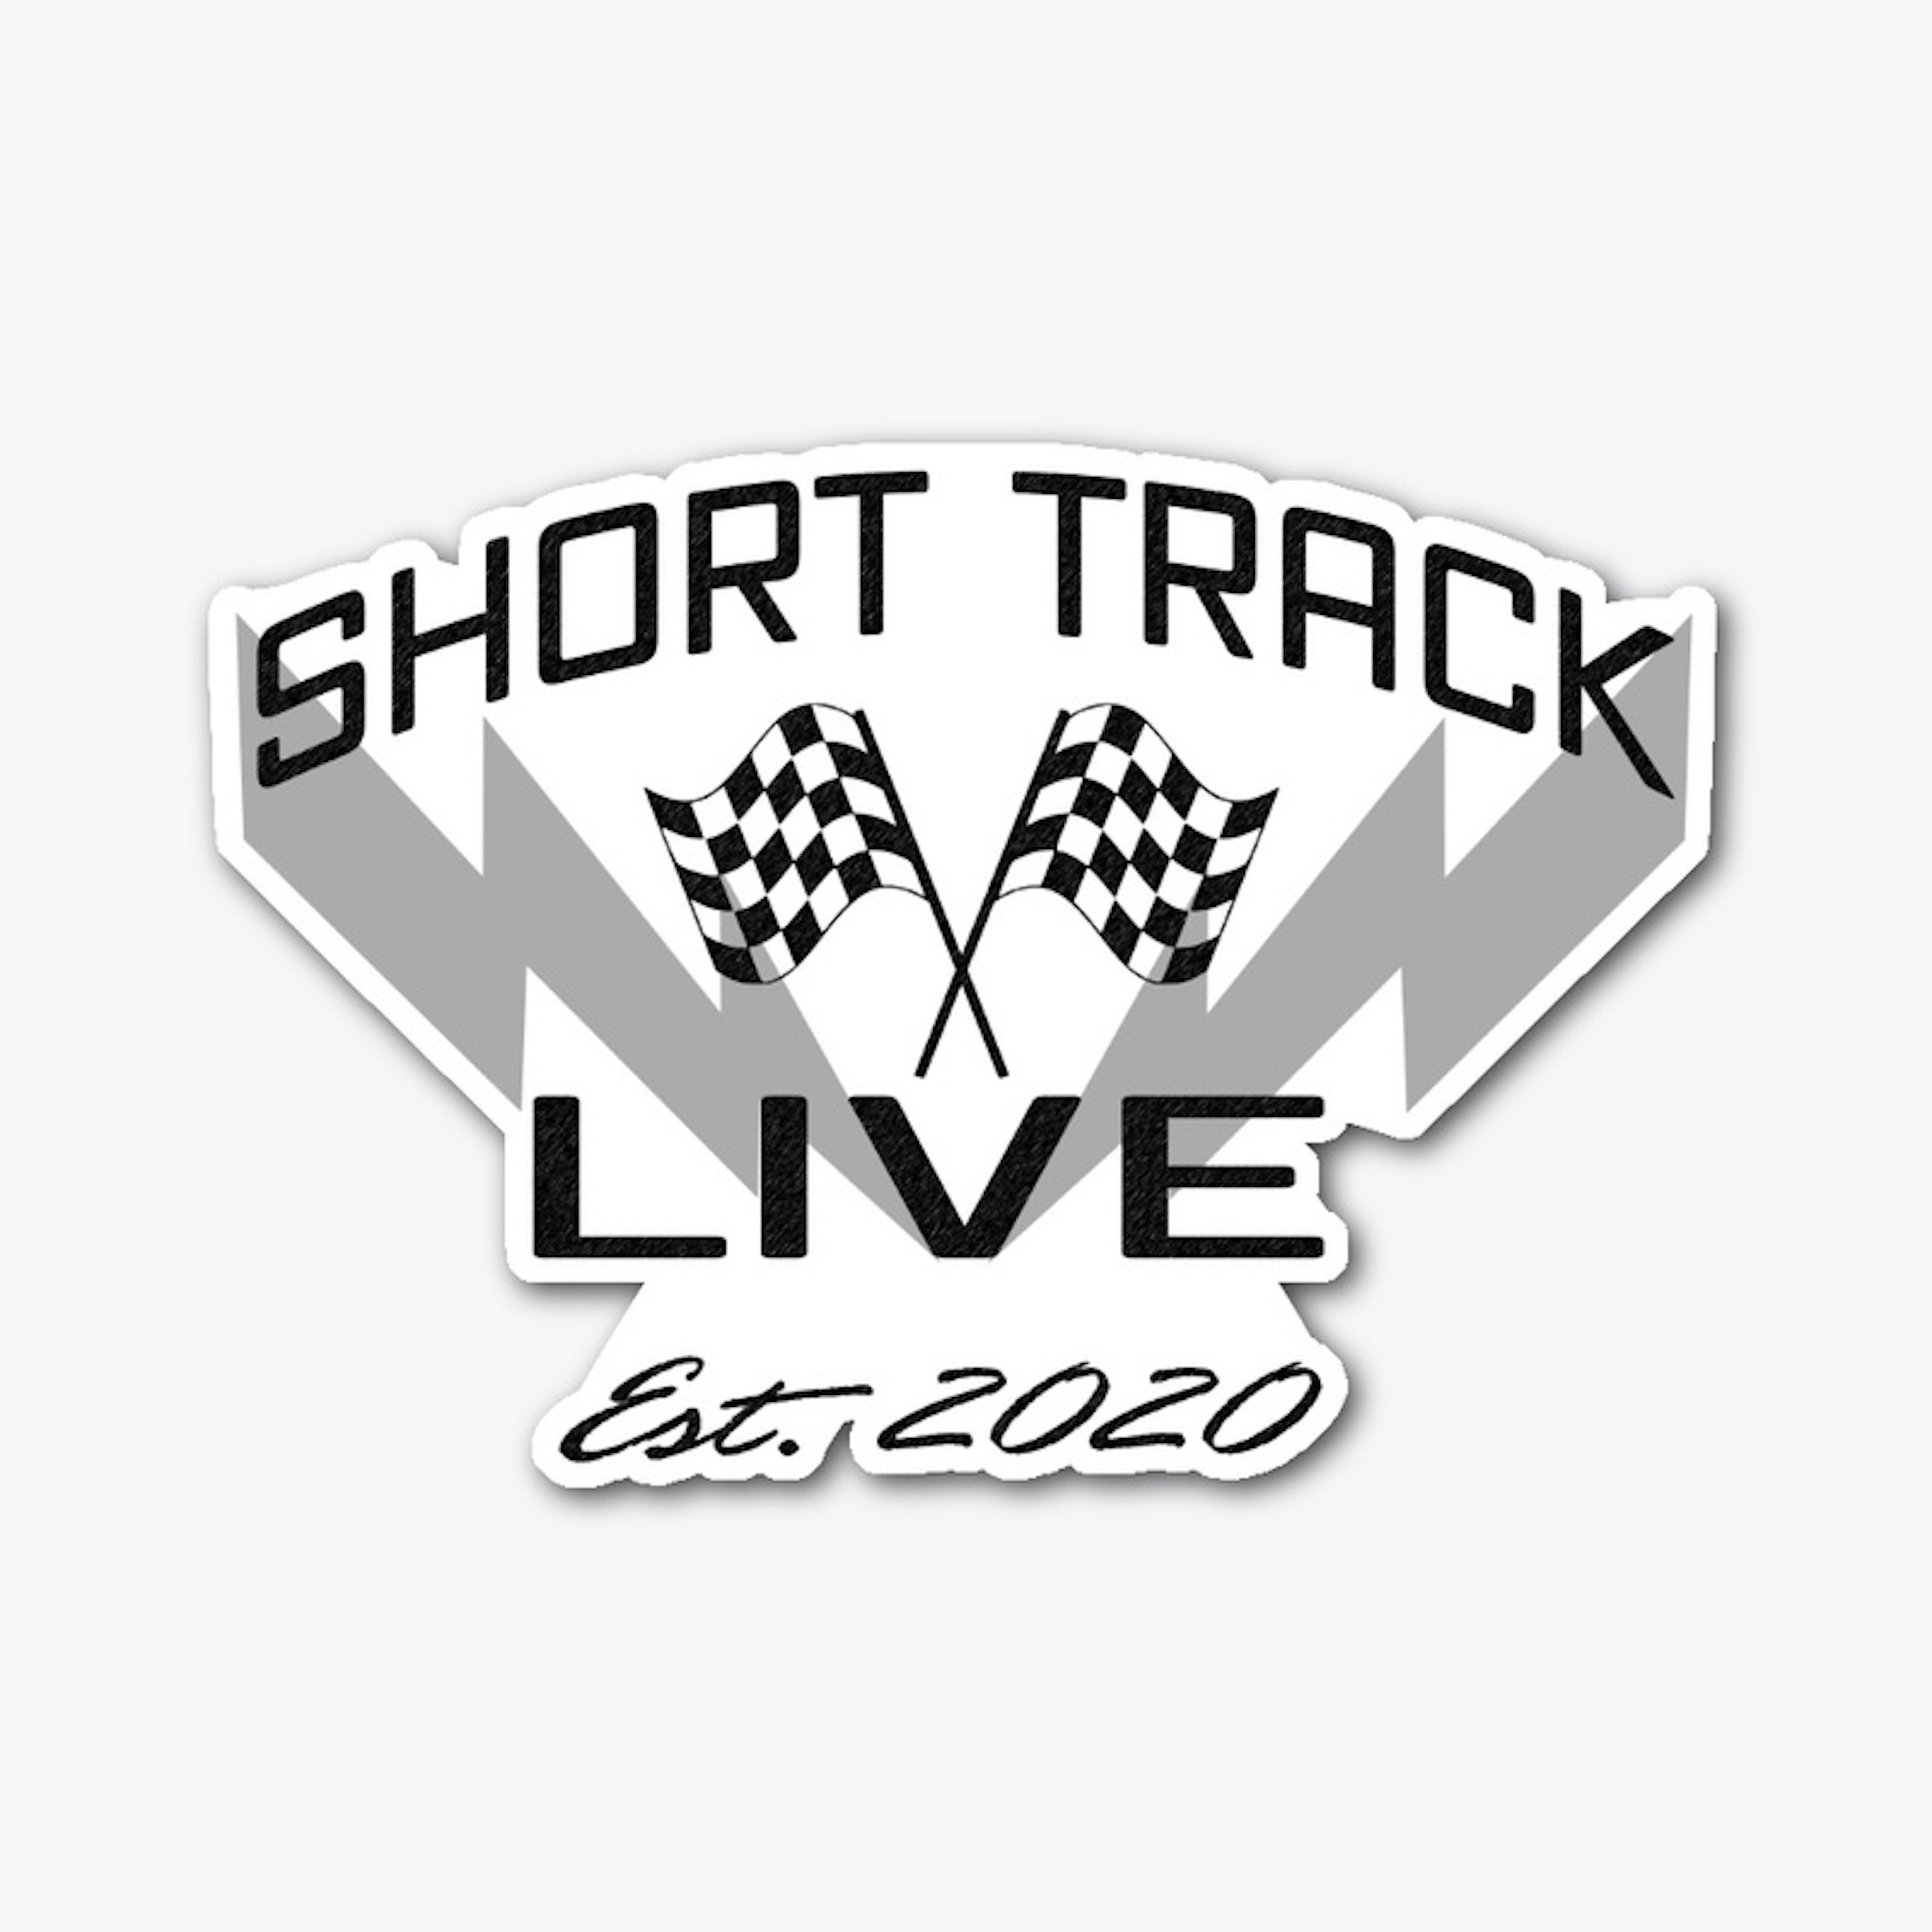 Short Track Live "Lightning" Cut Sticker